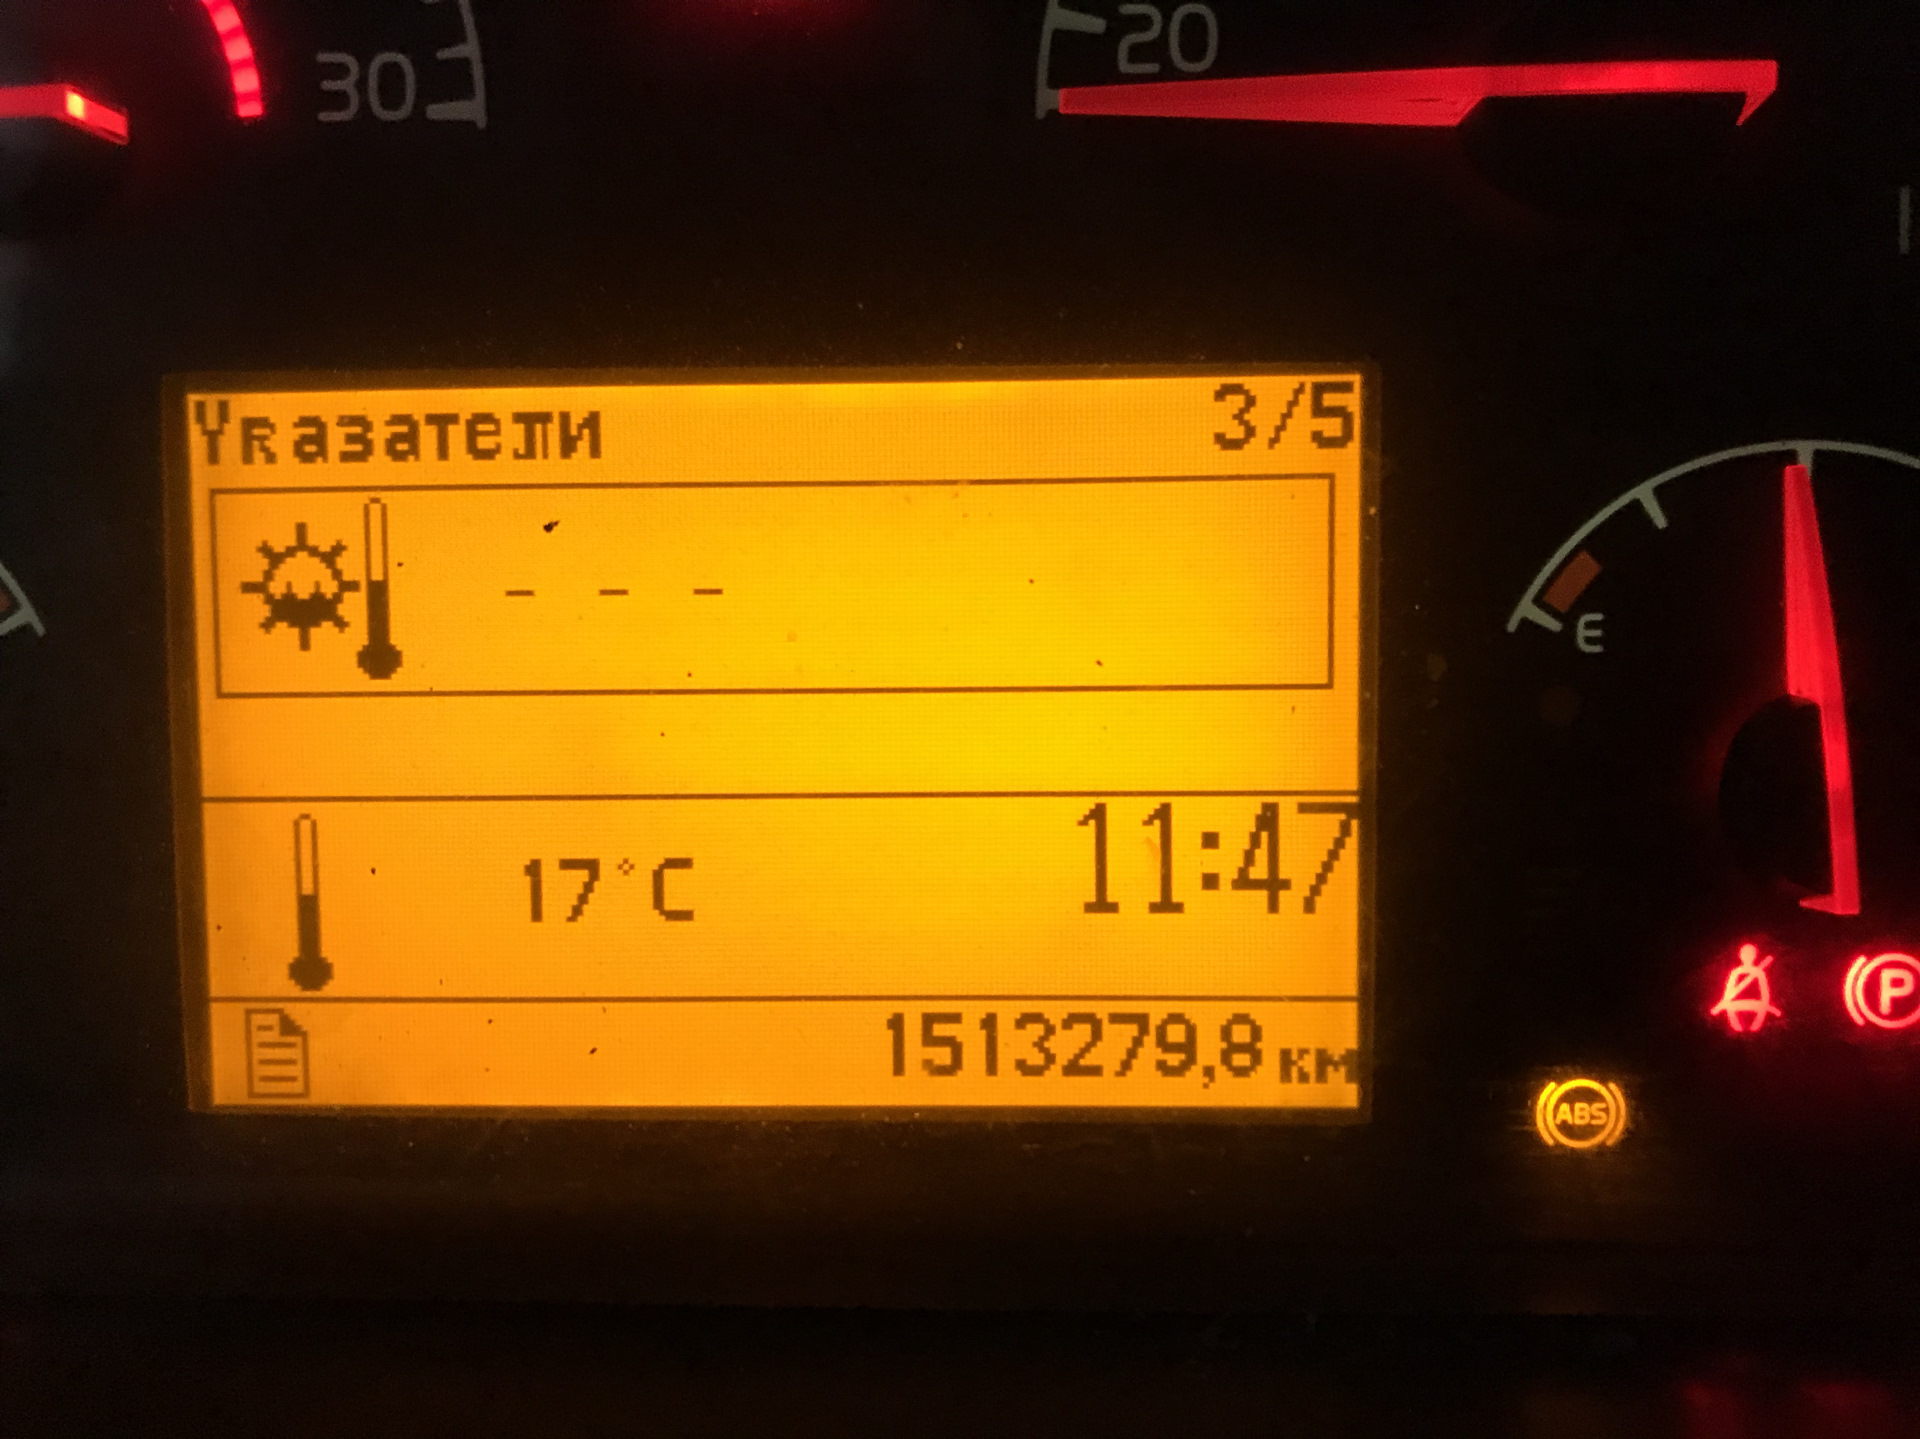 Ошибки volvo fh 12. Датчик температуры двигателя Volvo fh12. Датчик температуры КПП Вольво fh12. Датчик температуры двигателя Вольво fh12. Volvo fh12 индикаторы панели приборов.